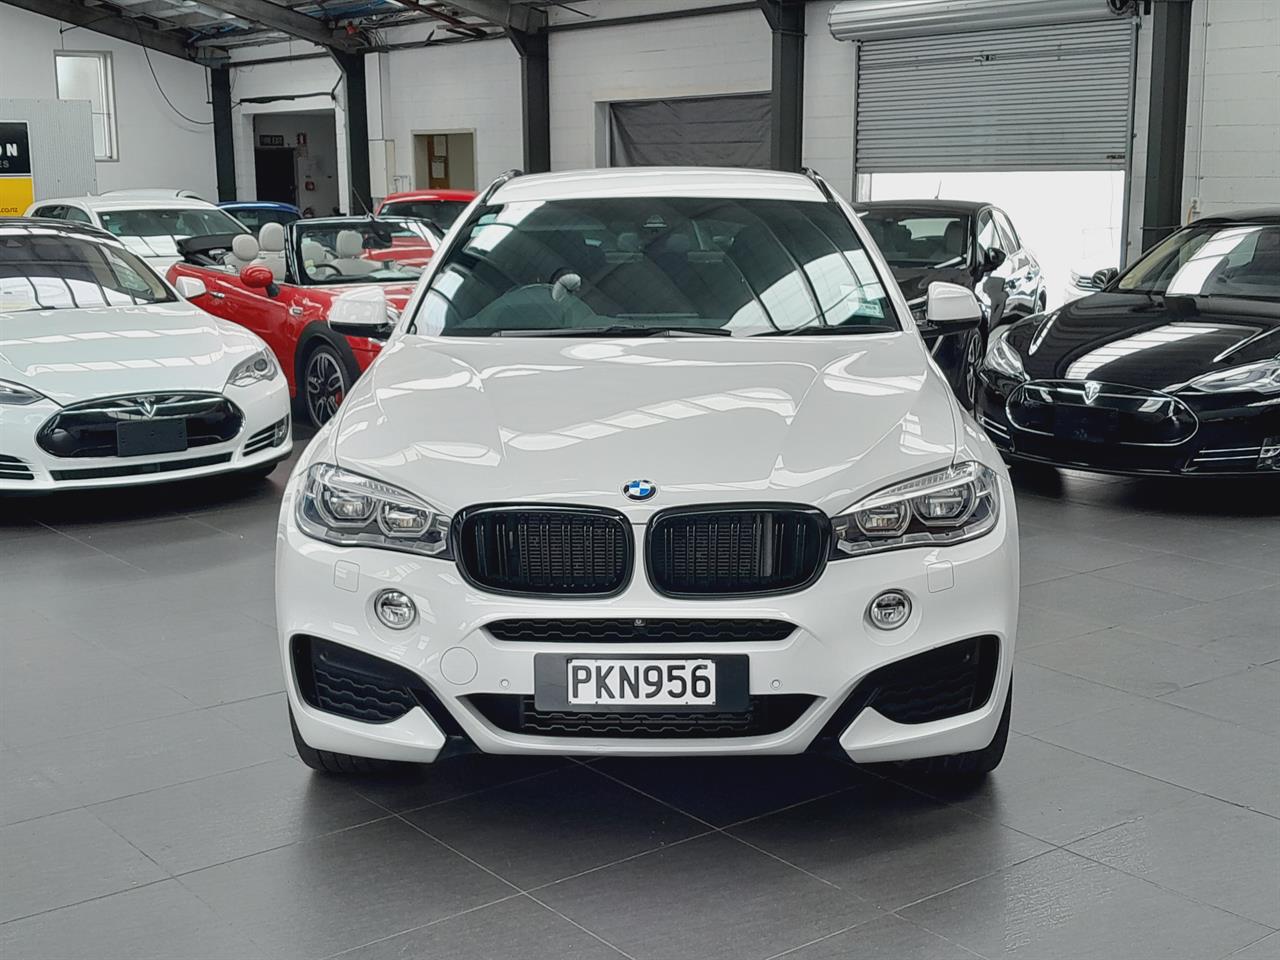 2015 BMW X6